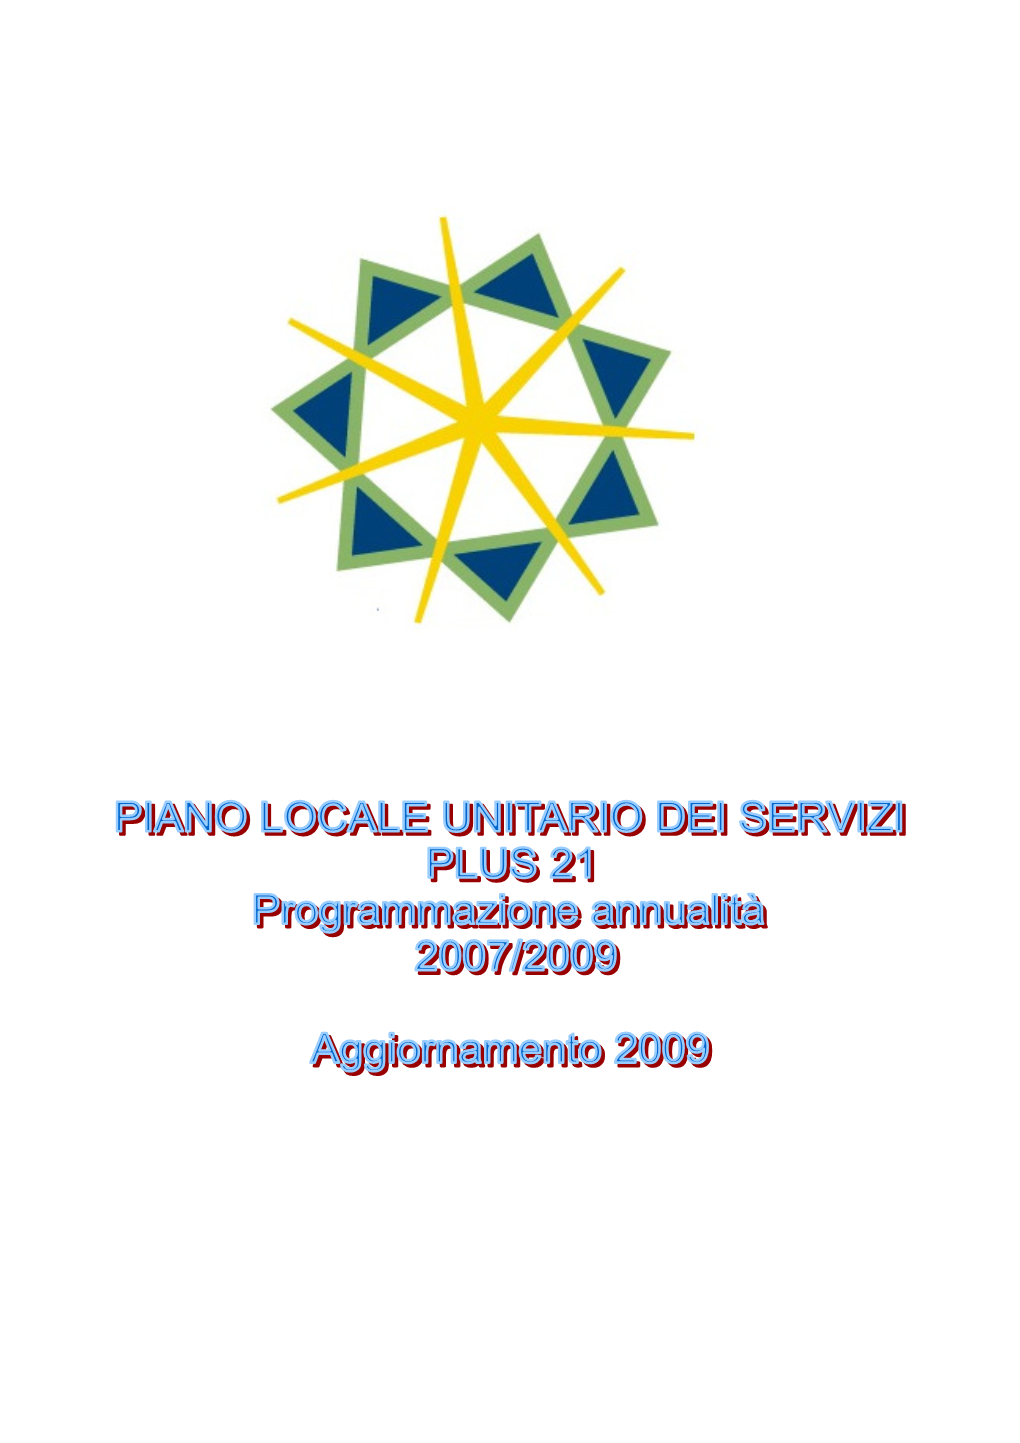 PLUS 21 Programmazione 2007 – 2009 - Aggiornamento 2009